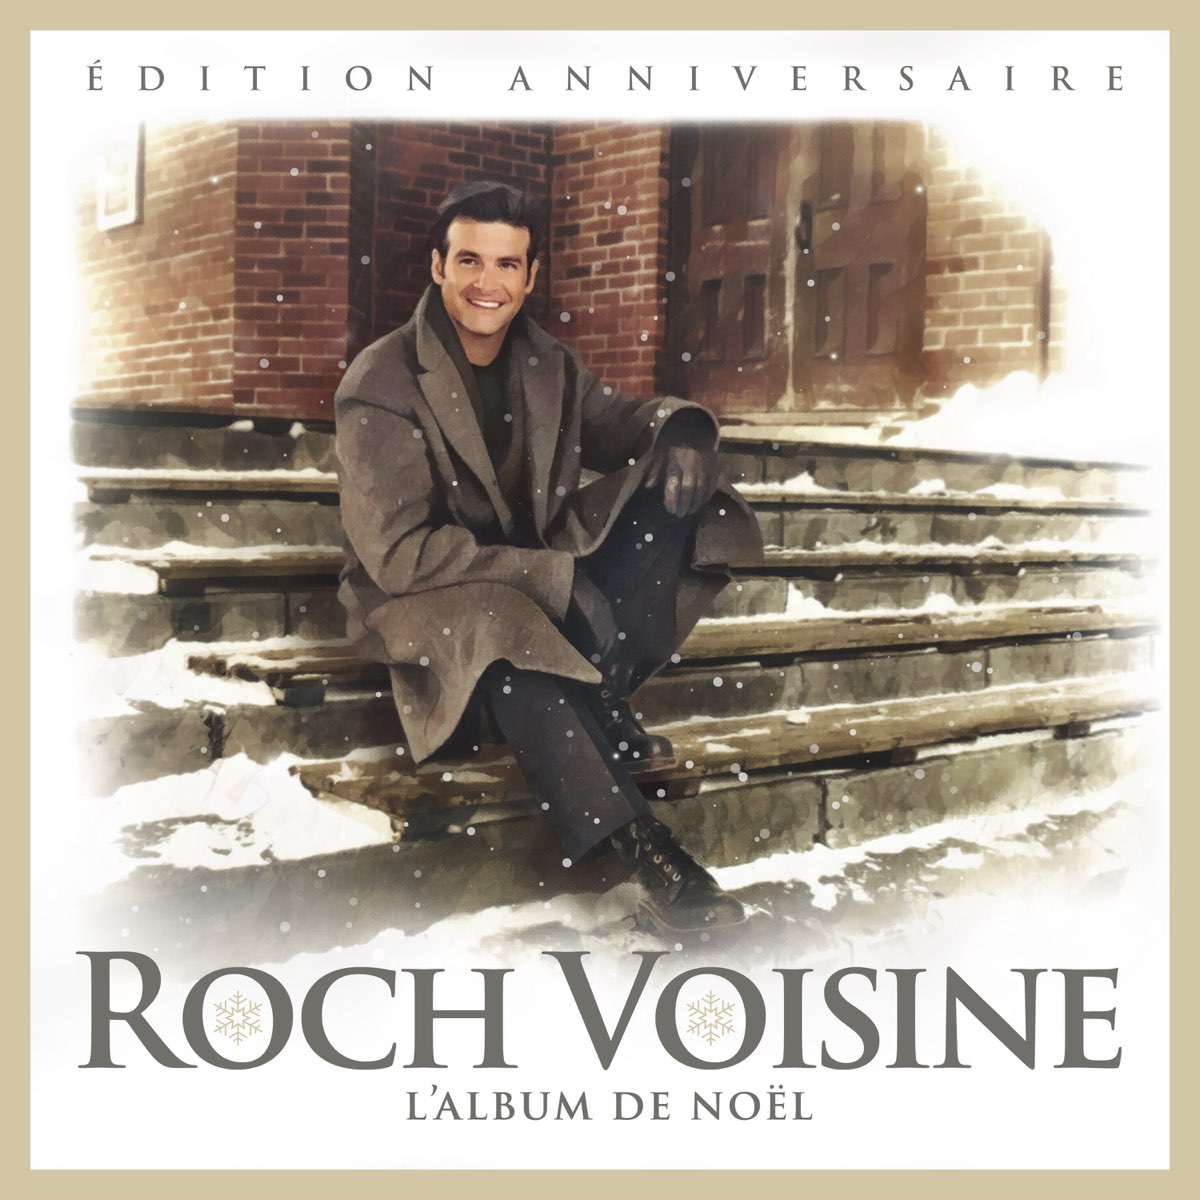 ‎L'album de Noël (Édition anniversaire) by Roch Voisine on Apple Music